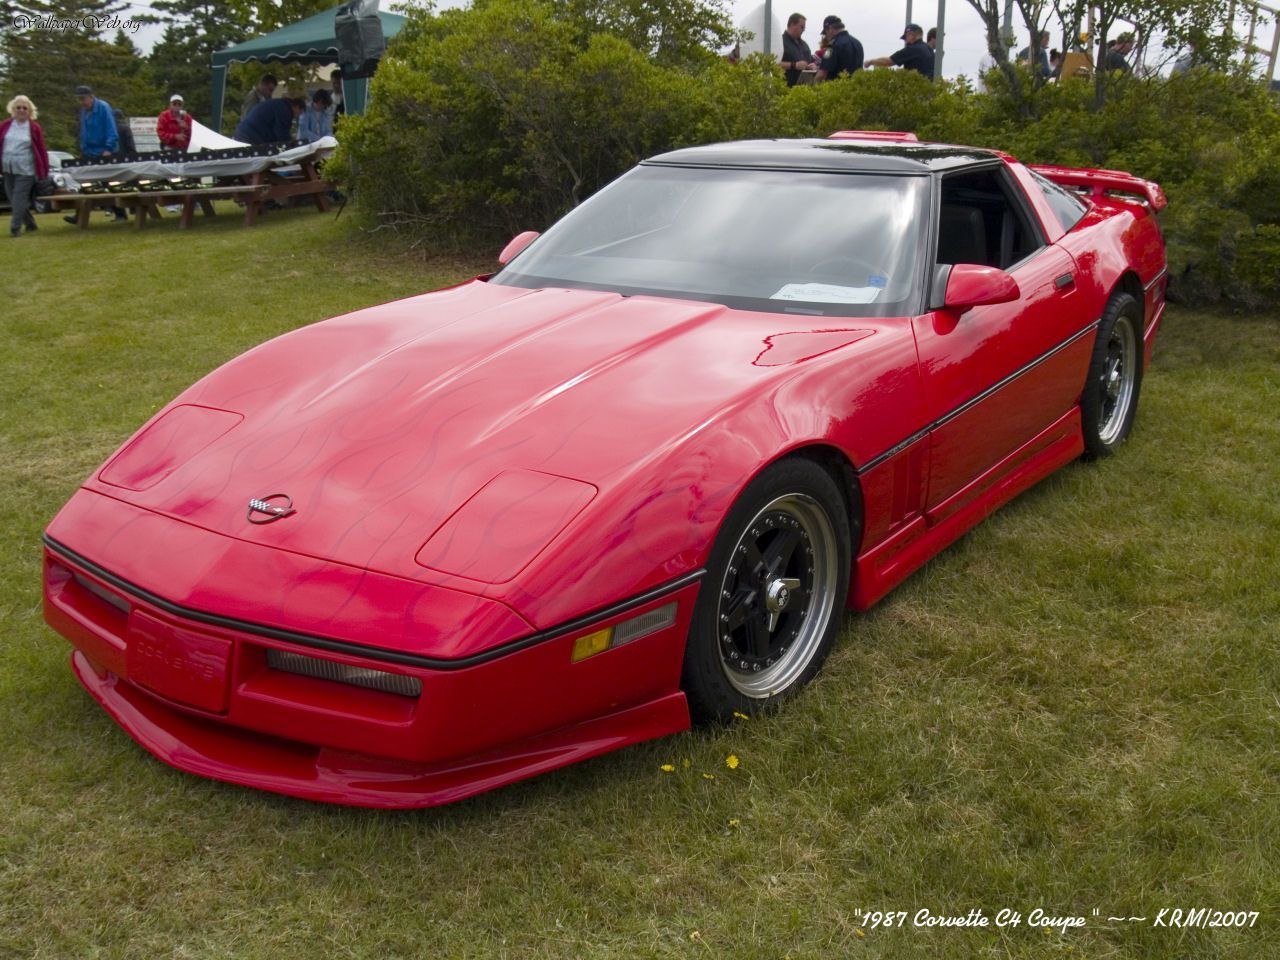 Cars: 1987 AM28 Corvette C4 Coupe, picture nr. 25613